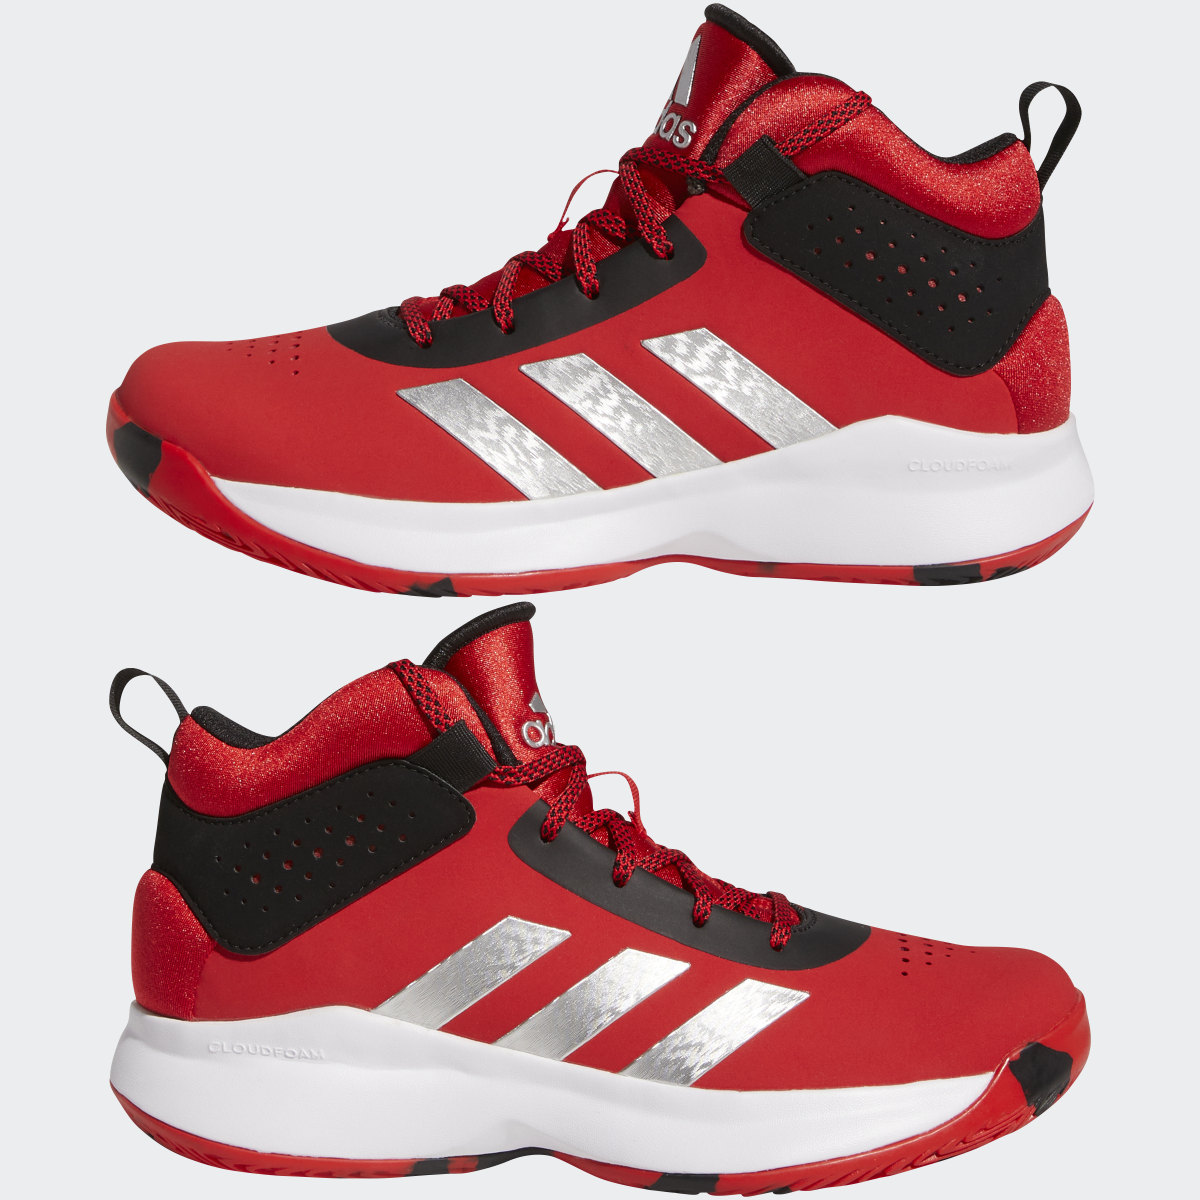 Adidas Cross Em Up 5 Wide Basketball Shoes. 8